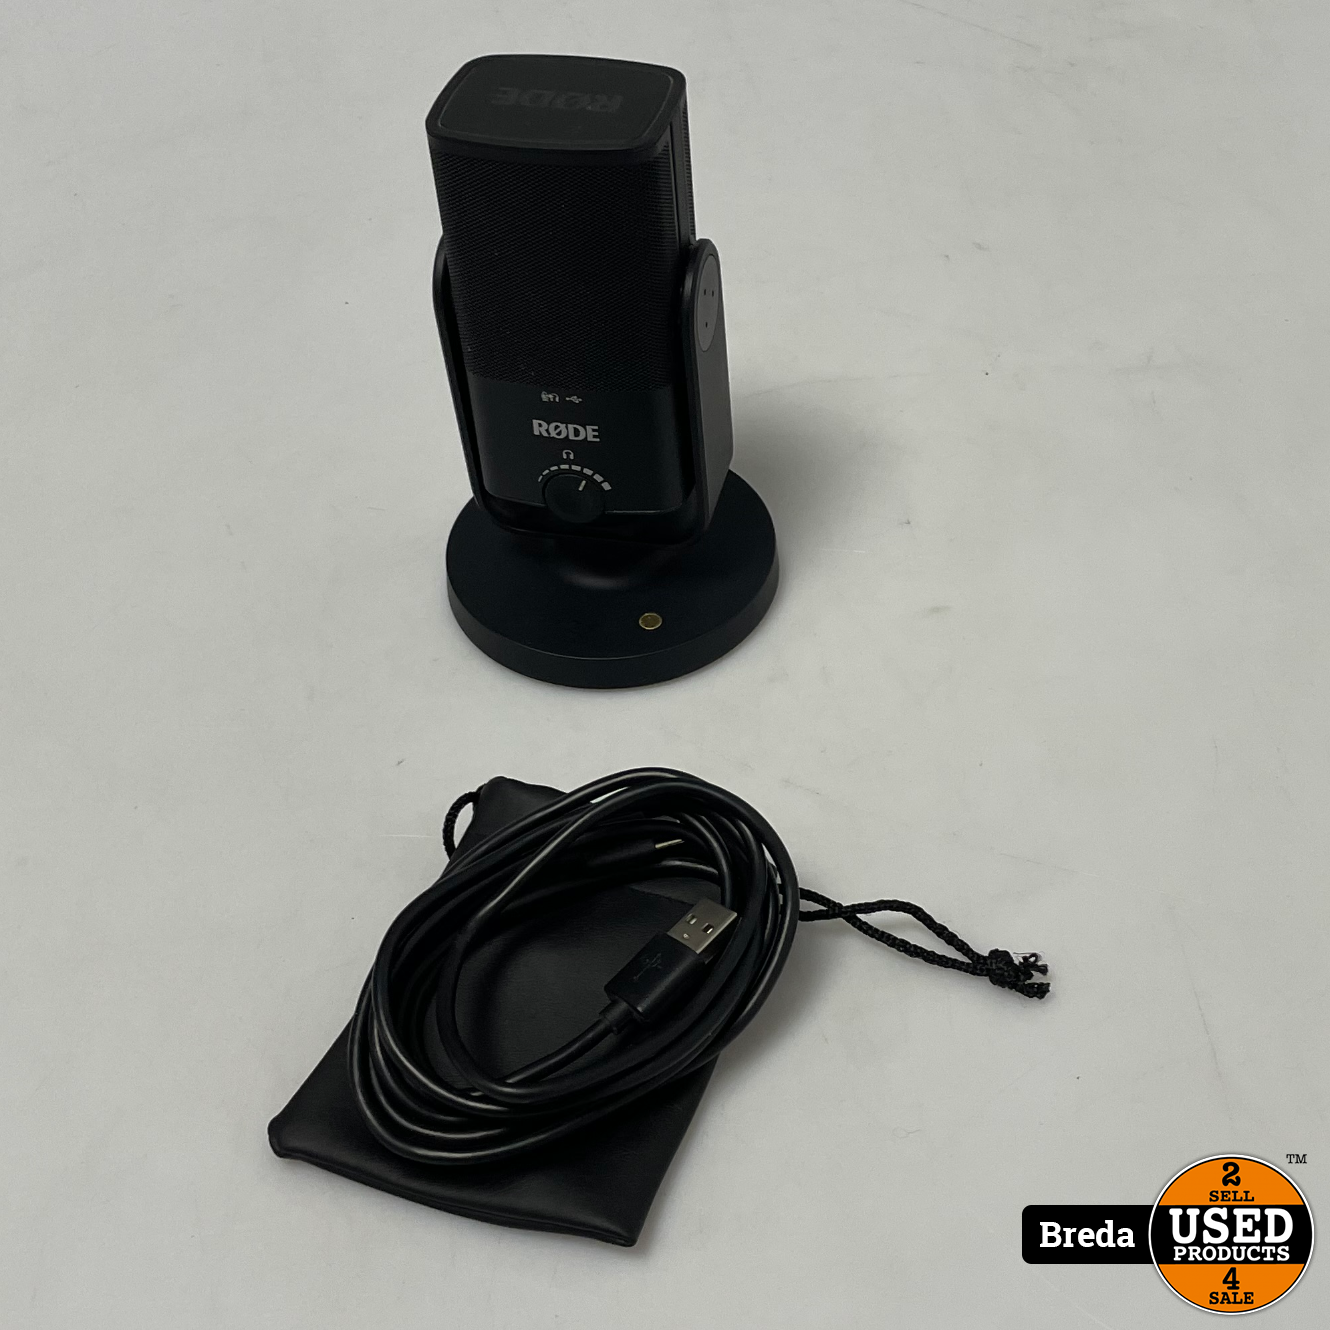 Aandringen artikel helikopter Rode NT-USB mini usb microfoon | Met garantie - Used Products Breda